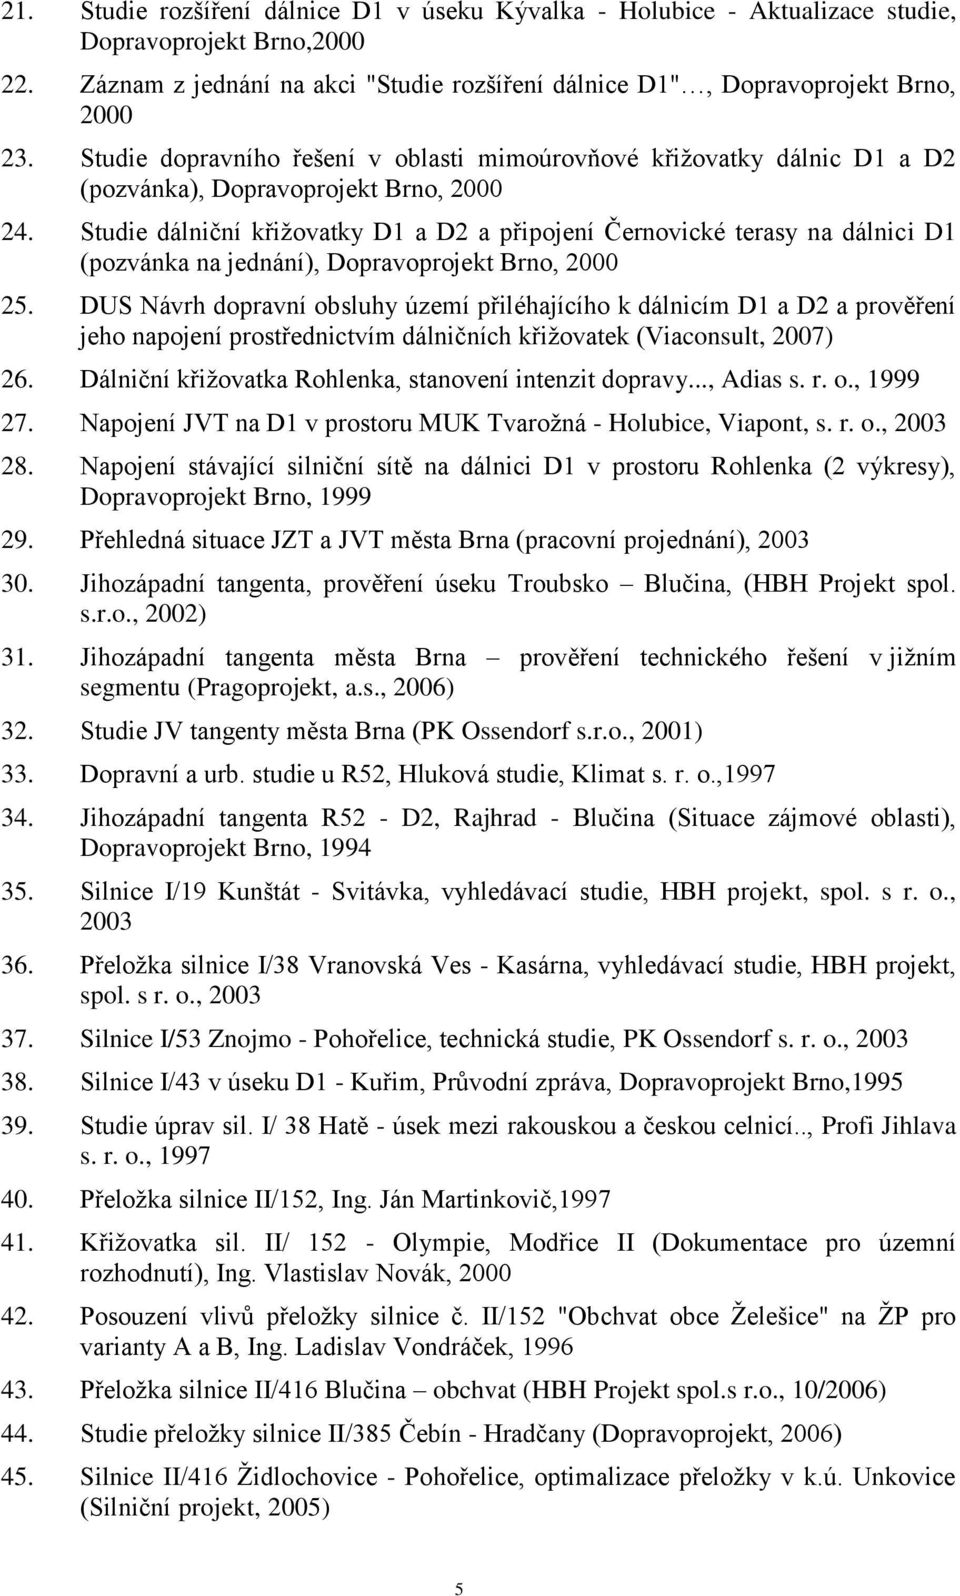 Studie dálniční křiţovatky D1 a D2 a připojení Černovické terasy na dálnici D1 (pozvánka na jednání), Dopravoprojekt Brno, 2000 25.